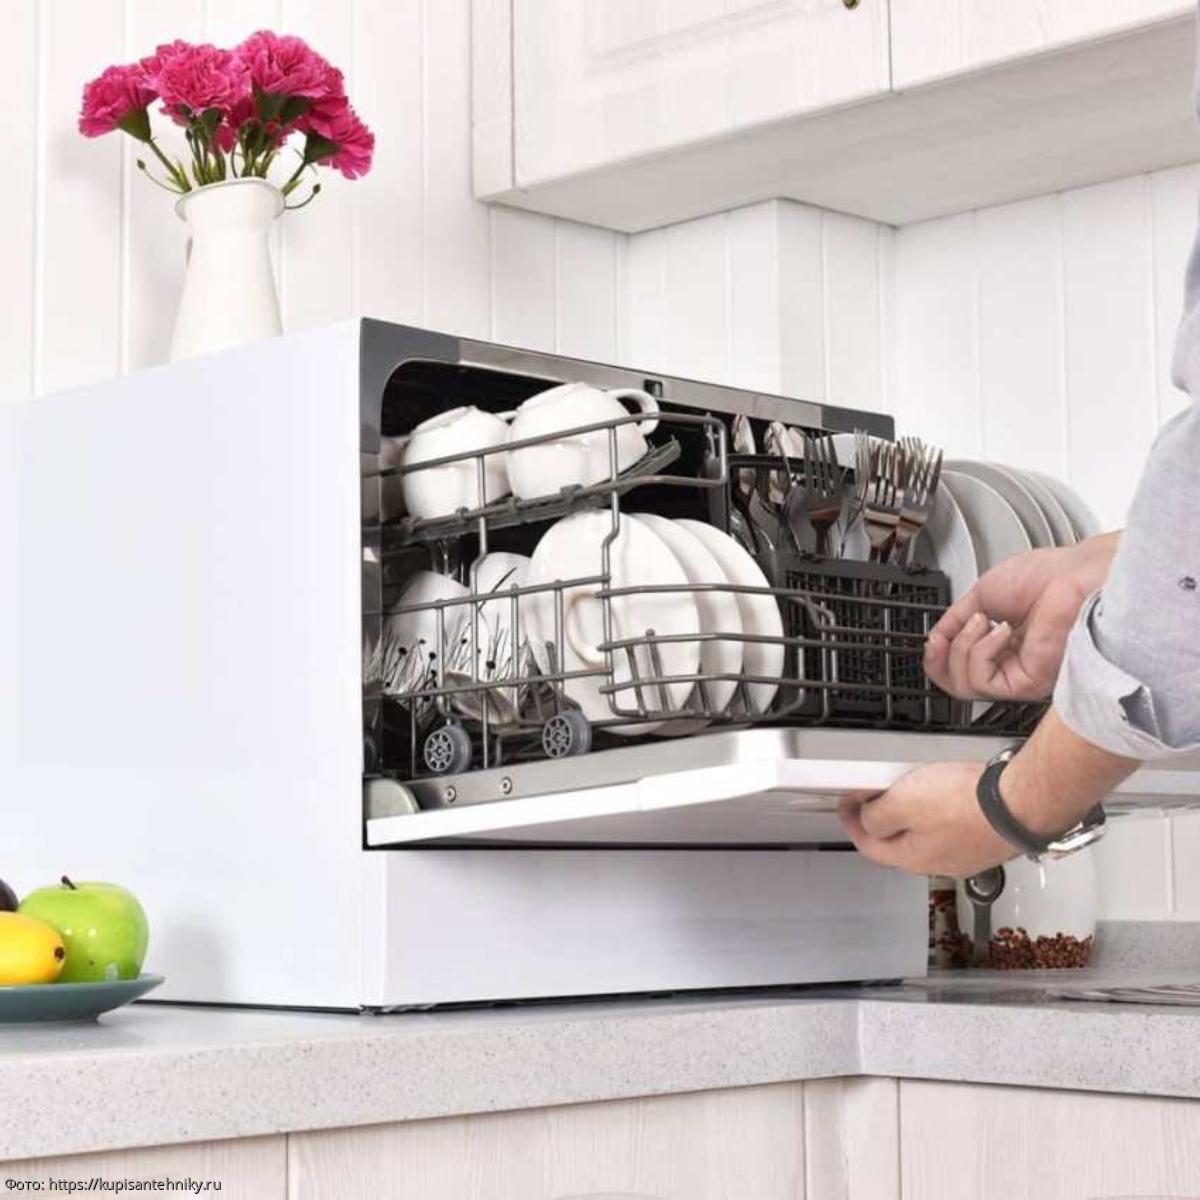 Сравнить посудомоечные машины. AEG Dishwasher. Встраимовая компактная посудомоечная машина. Посудомоечная машина (компактная) Hyundai dt305. Посудомоечные машины АЕГ В интерьере.